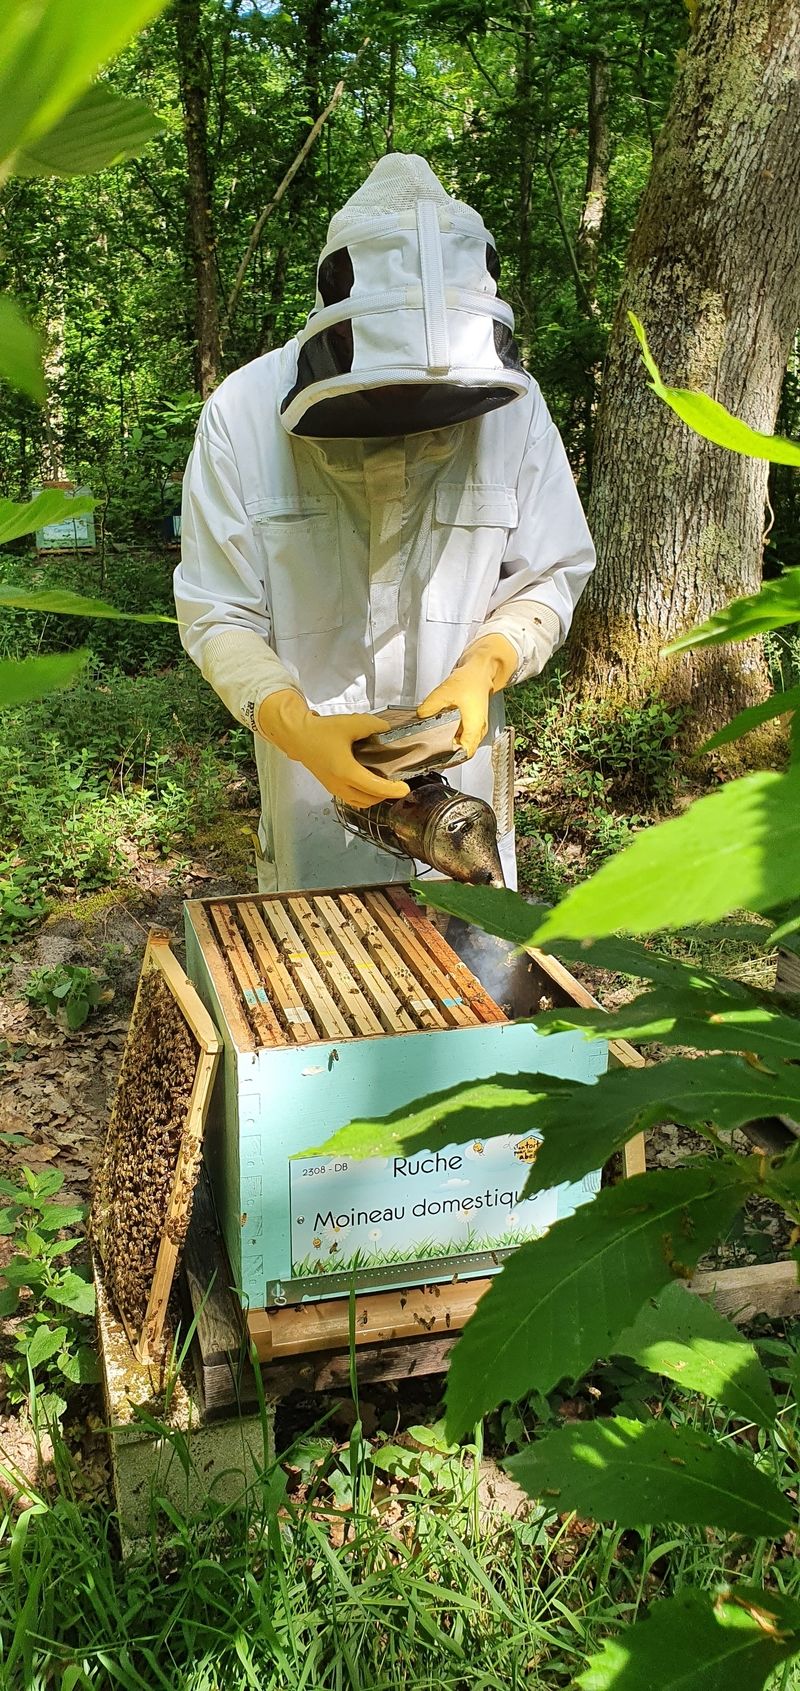 La ruche Moineau domestique